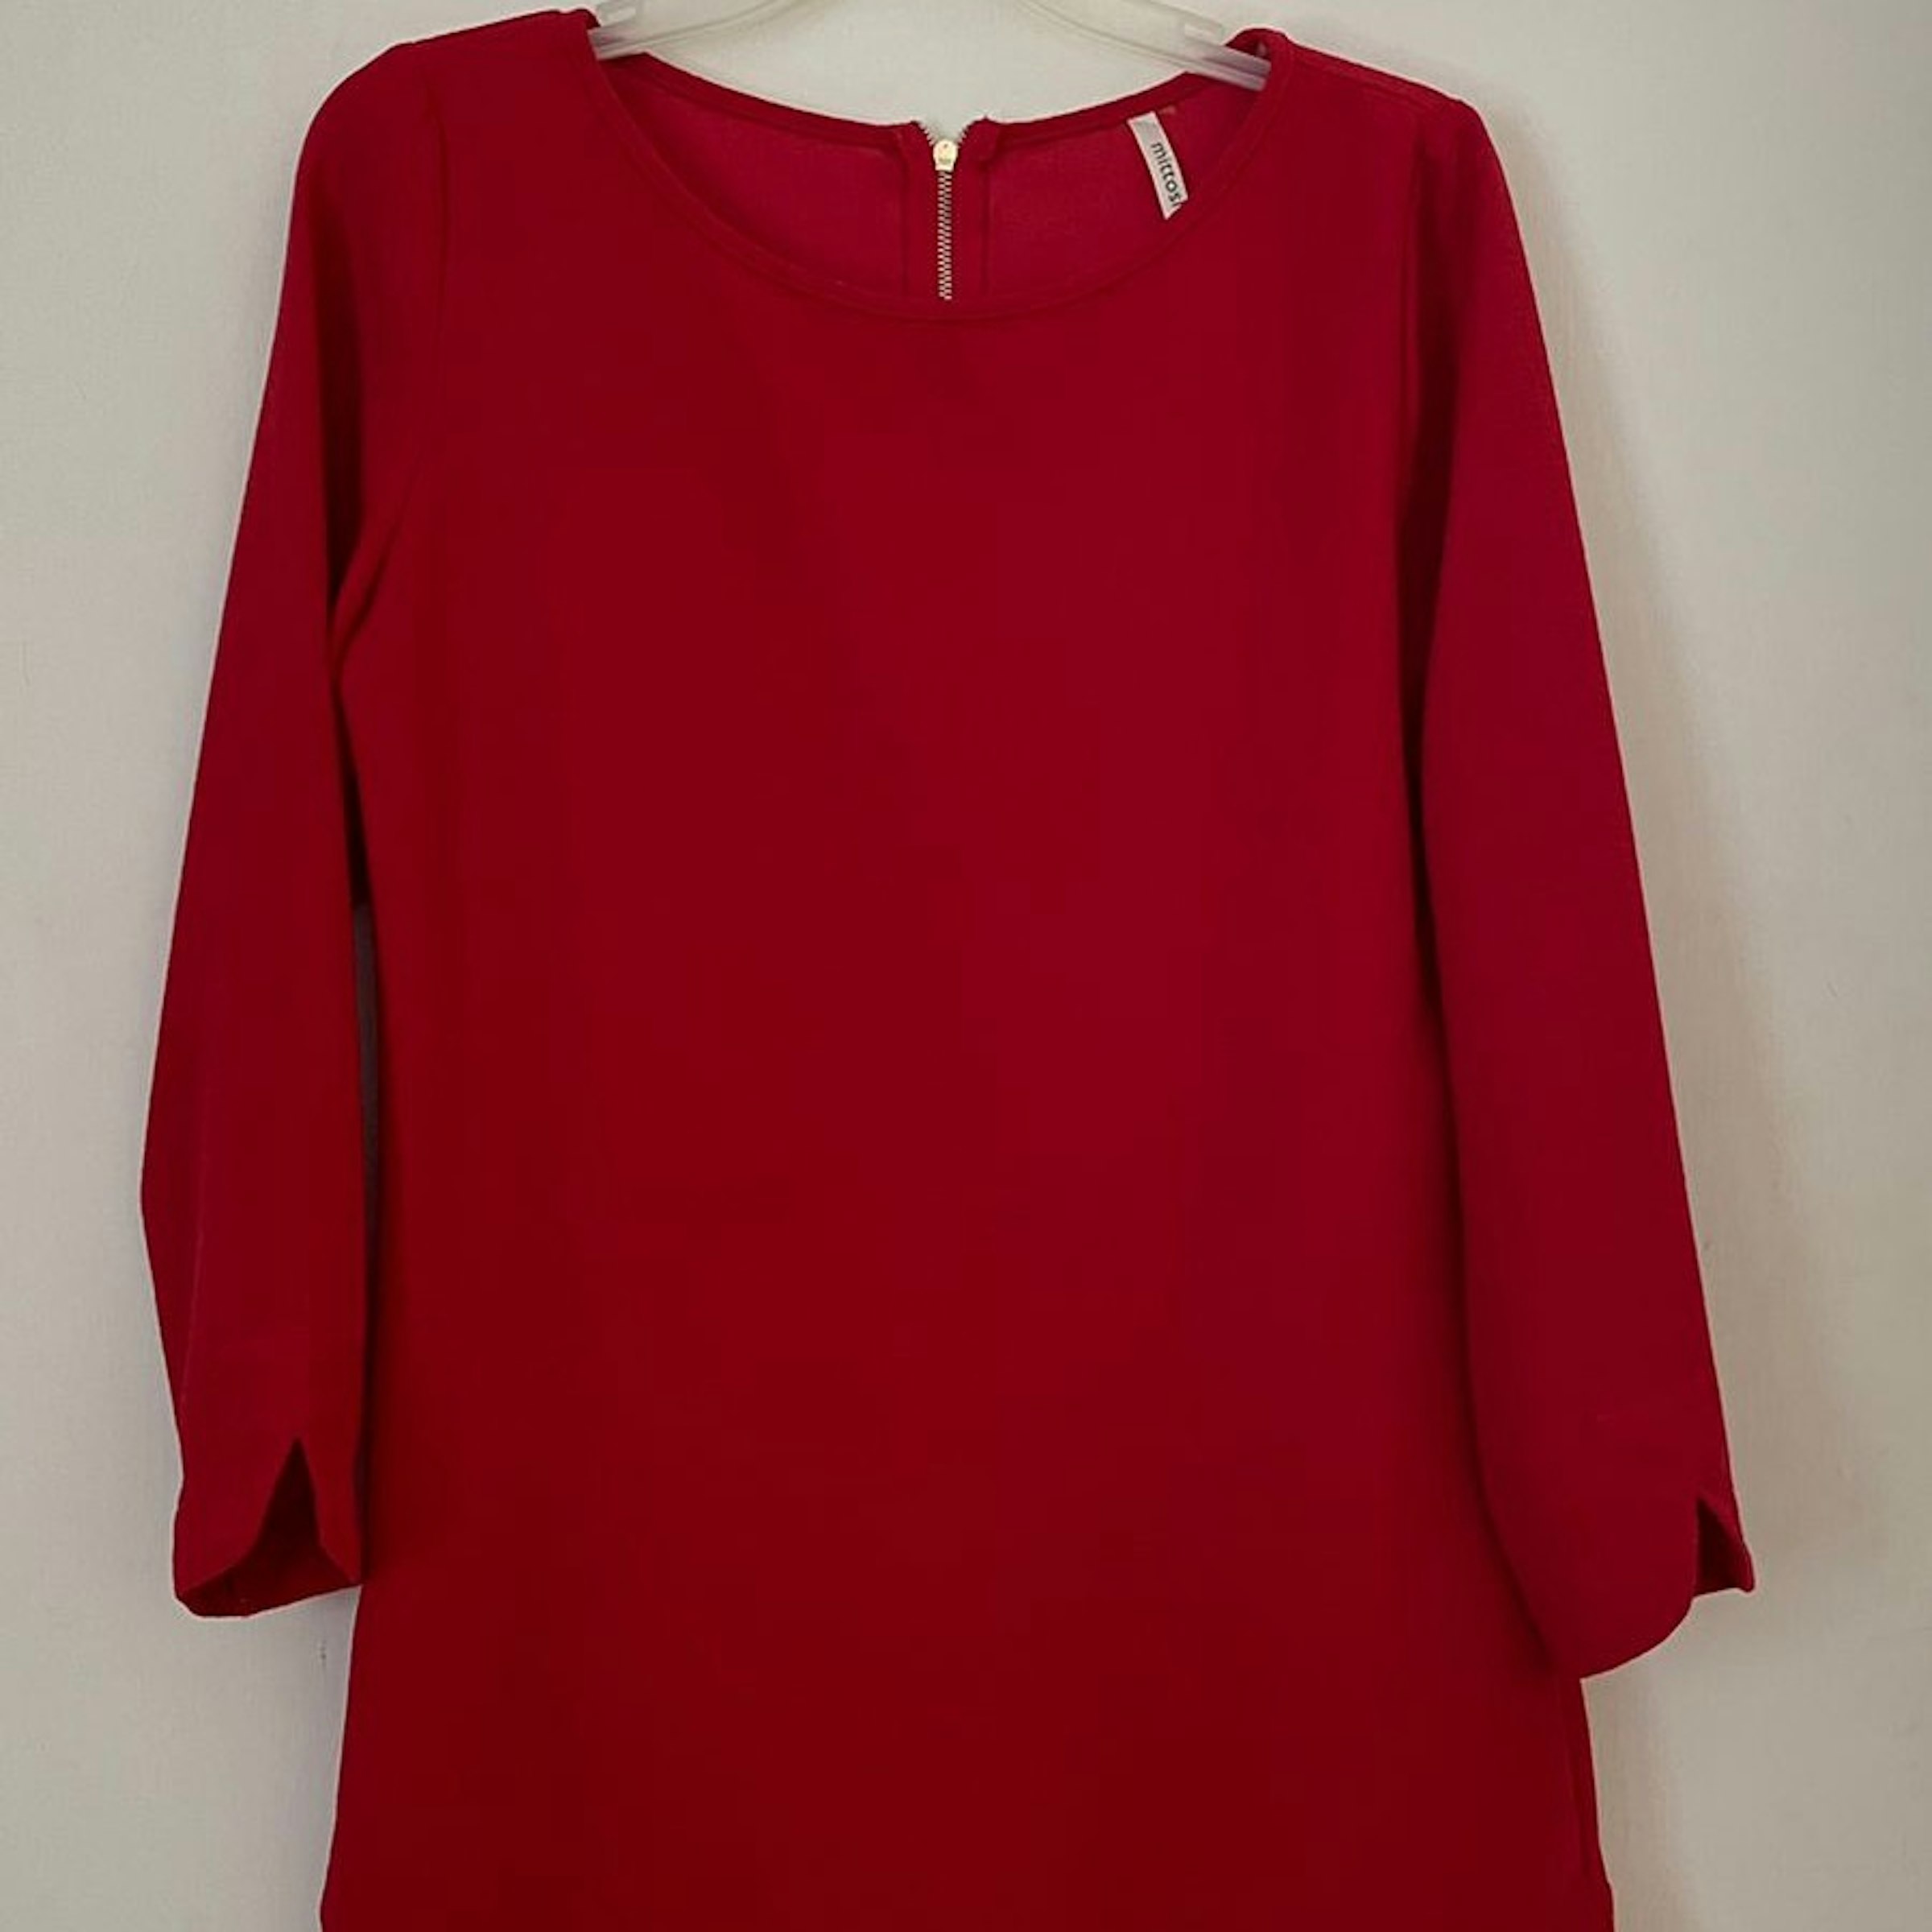 Vestido rojo corto manga larga - $ | Gloset